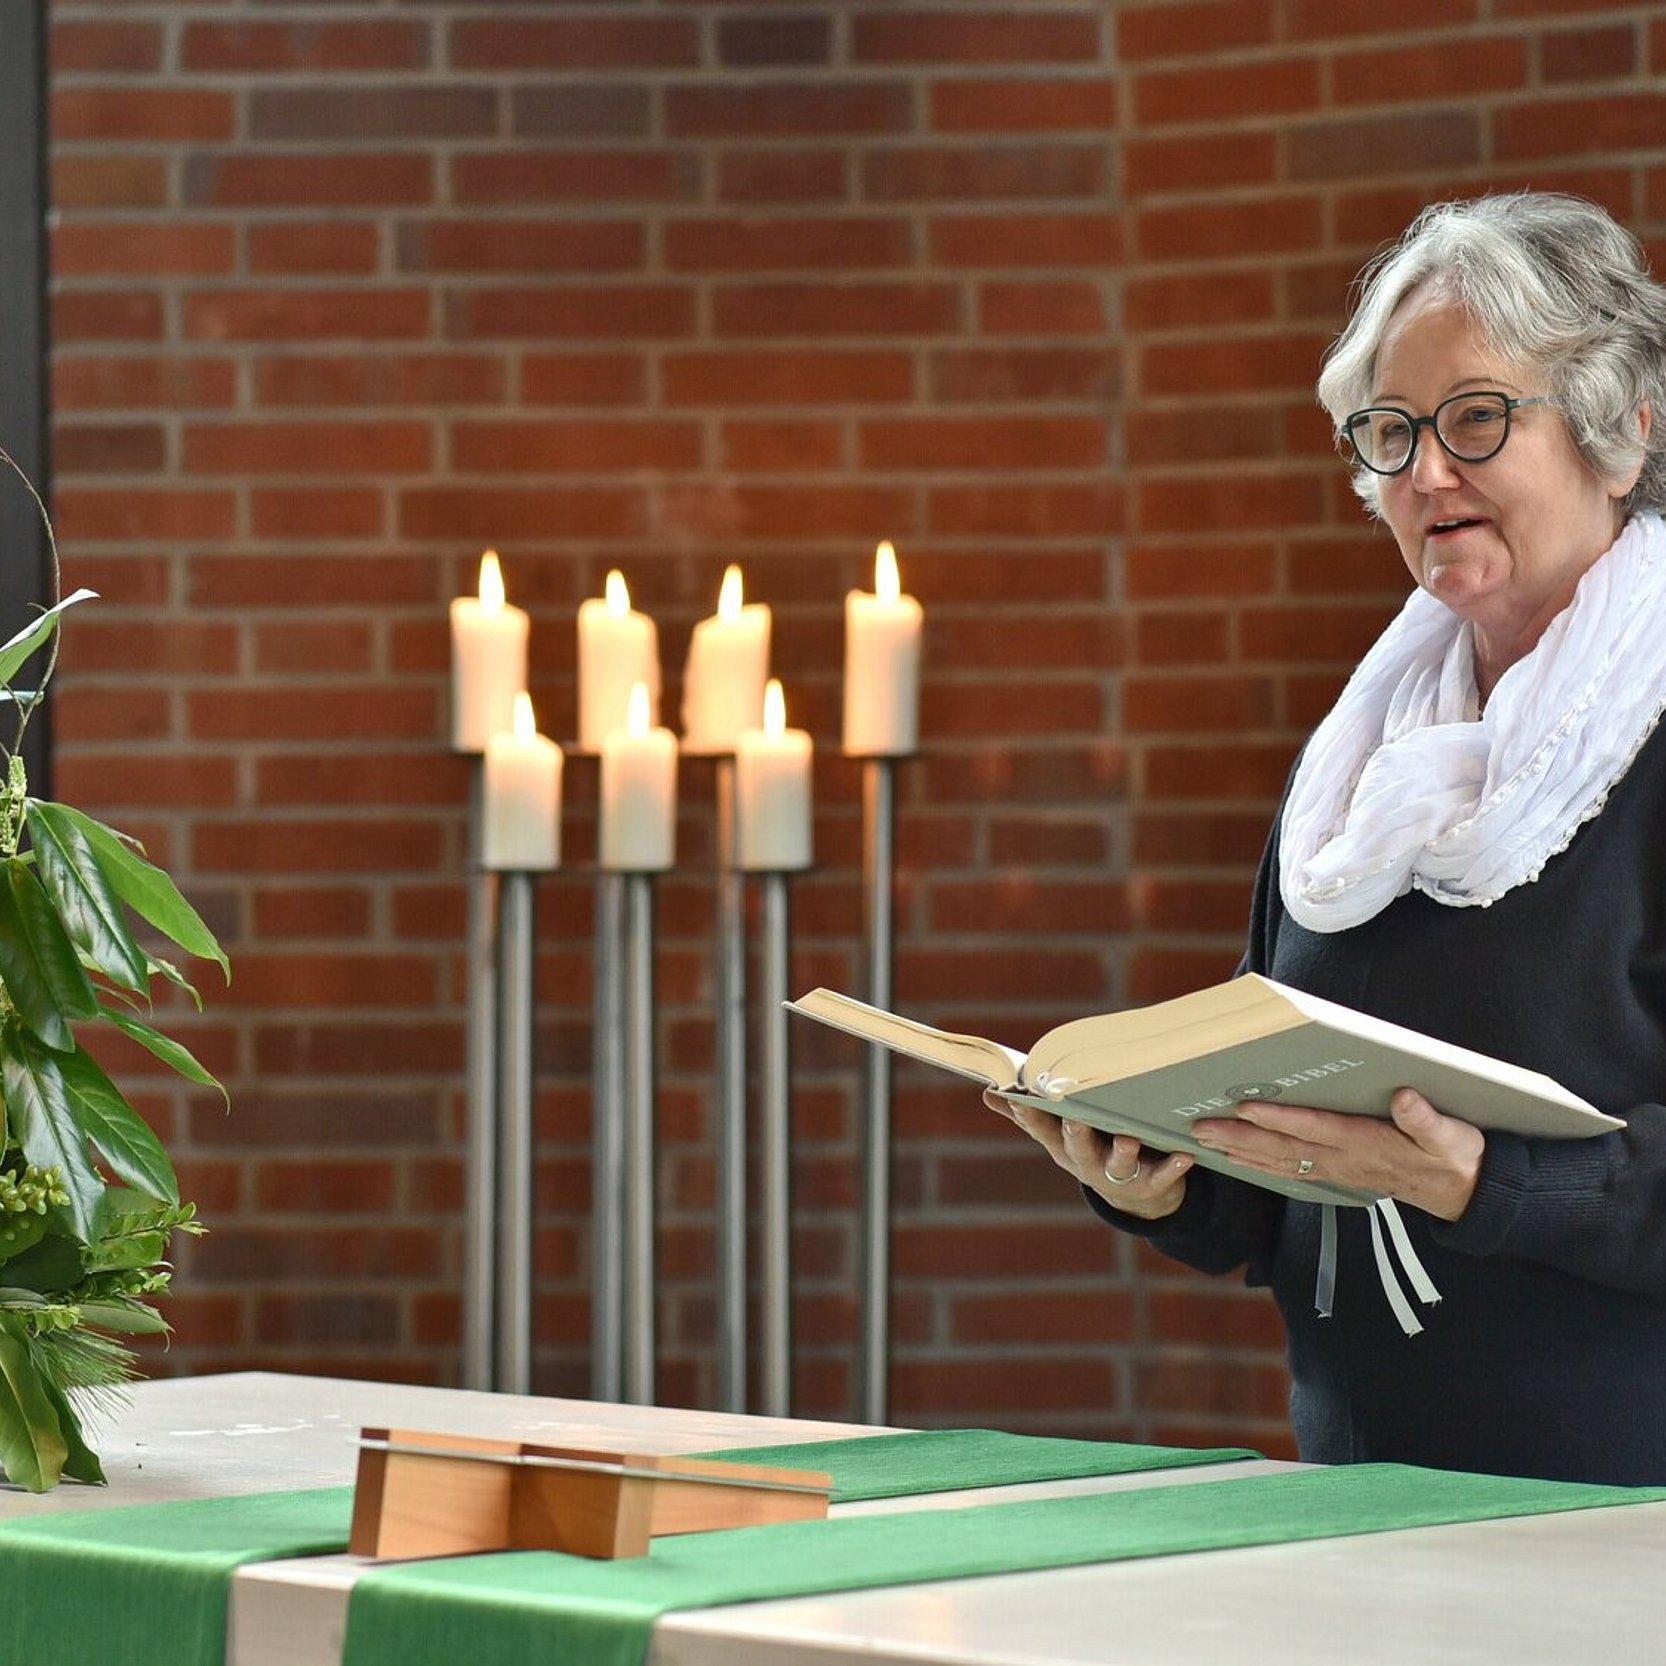 Ein predigende Frau steht hinter einem Altar mit Blumen und liest aus einer großen Bibel, die sie in Händen hält. Im Hintergrund brennen sieben Kerzen auf hohen silbernen Lauchtern.